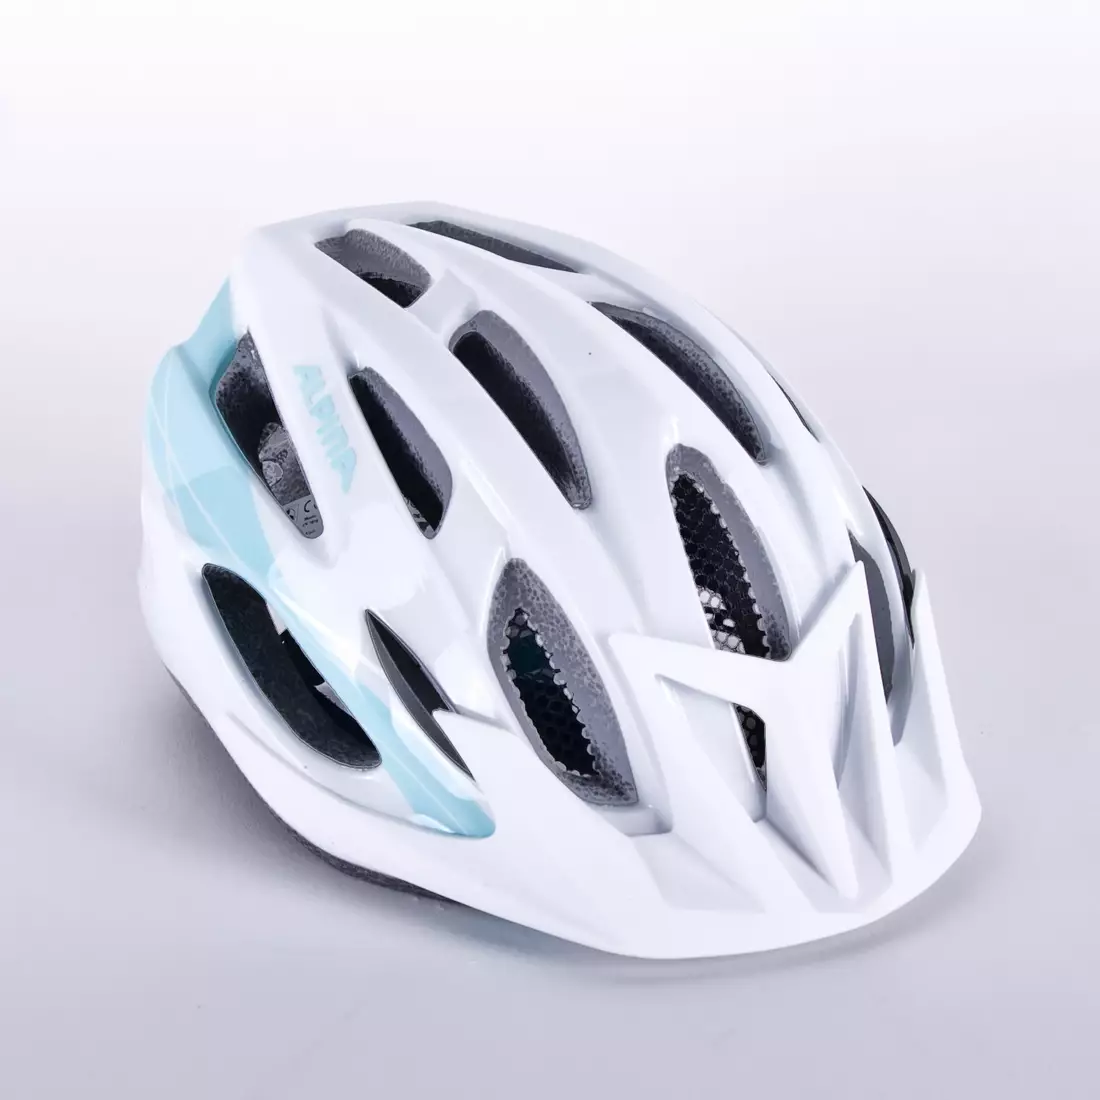 ALPINA Fahrradhelm MTB 17, weiß und hellblau